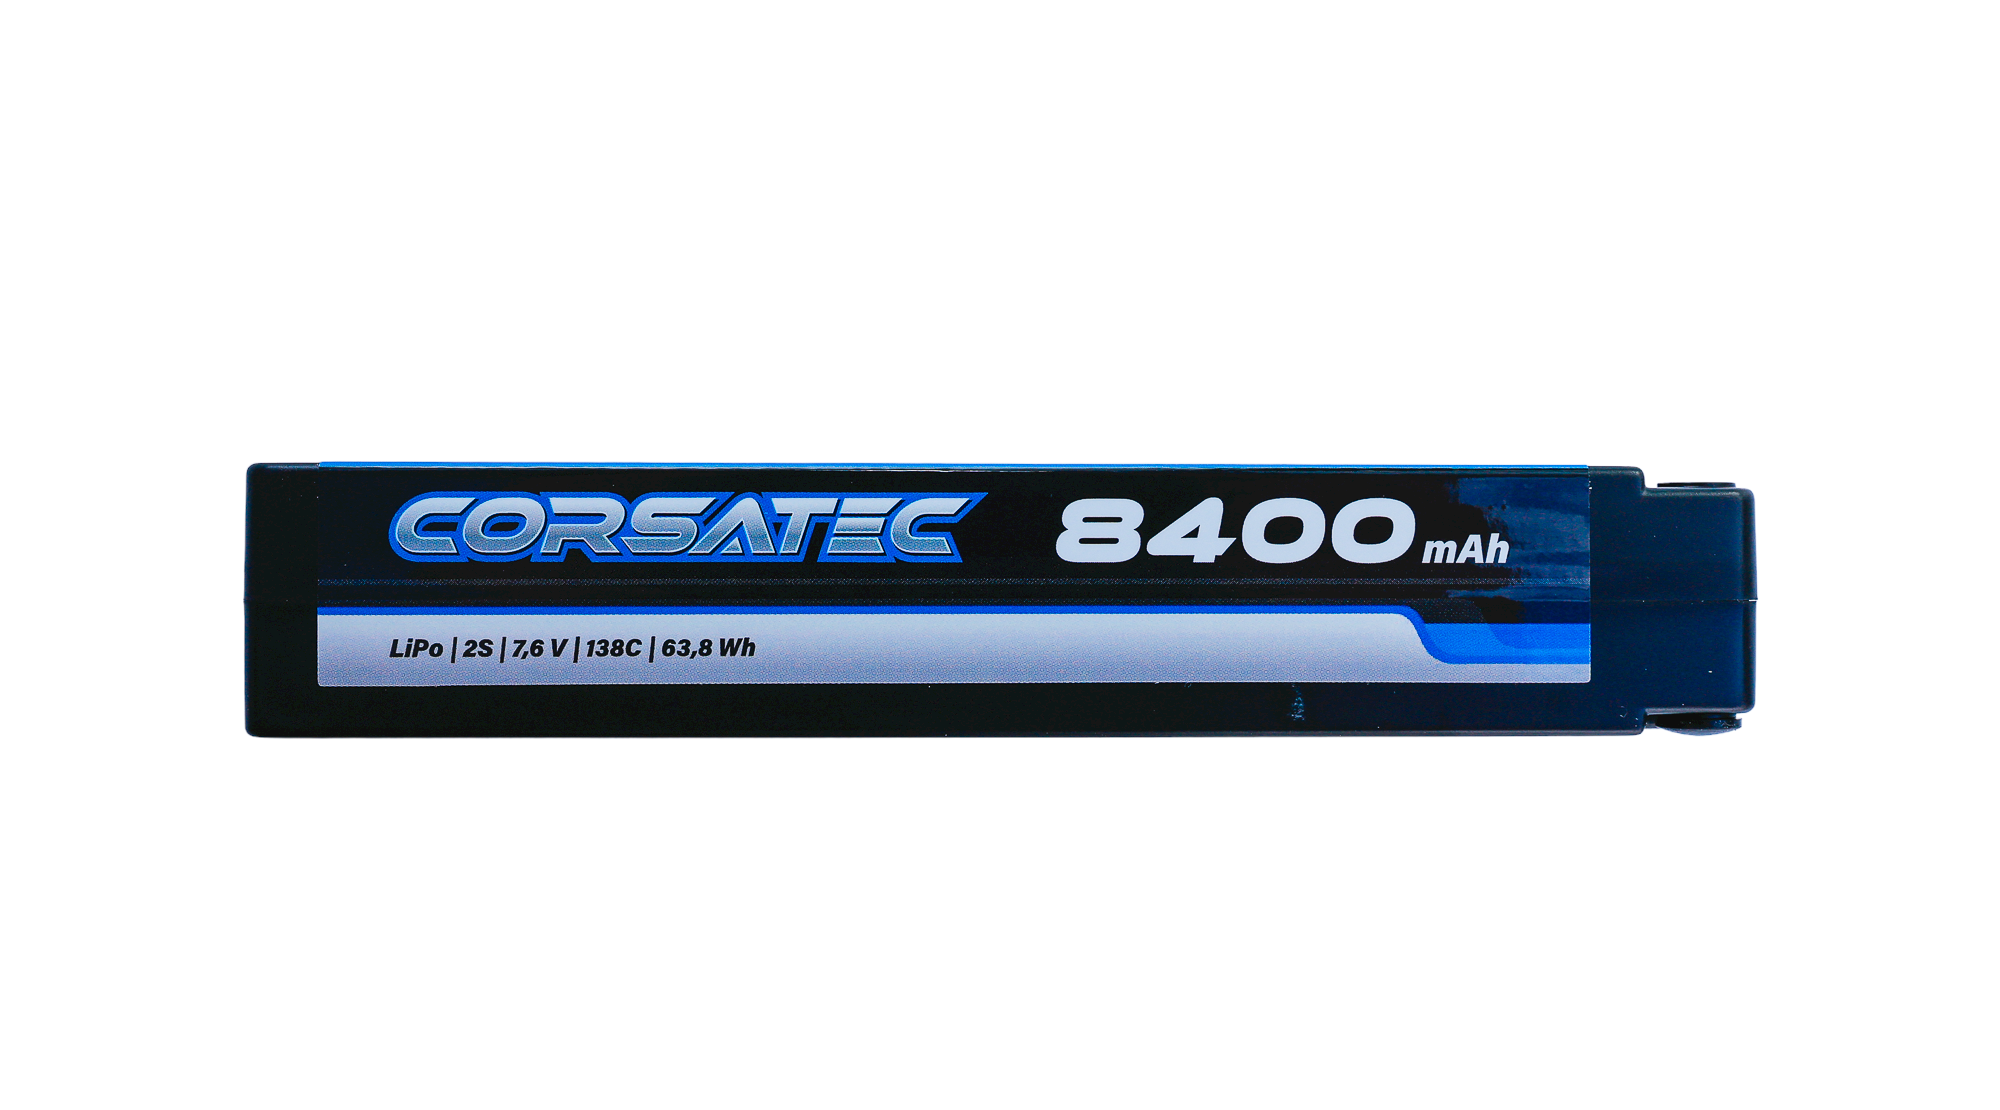 Corsatec Graphene HV+ Lipo 2s  stick 8400 mah